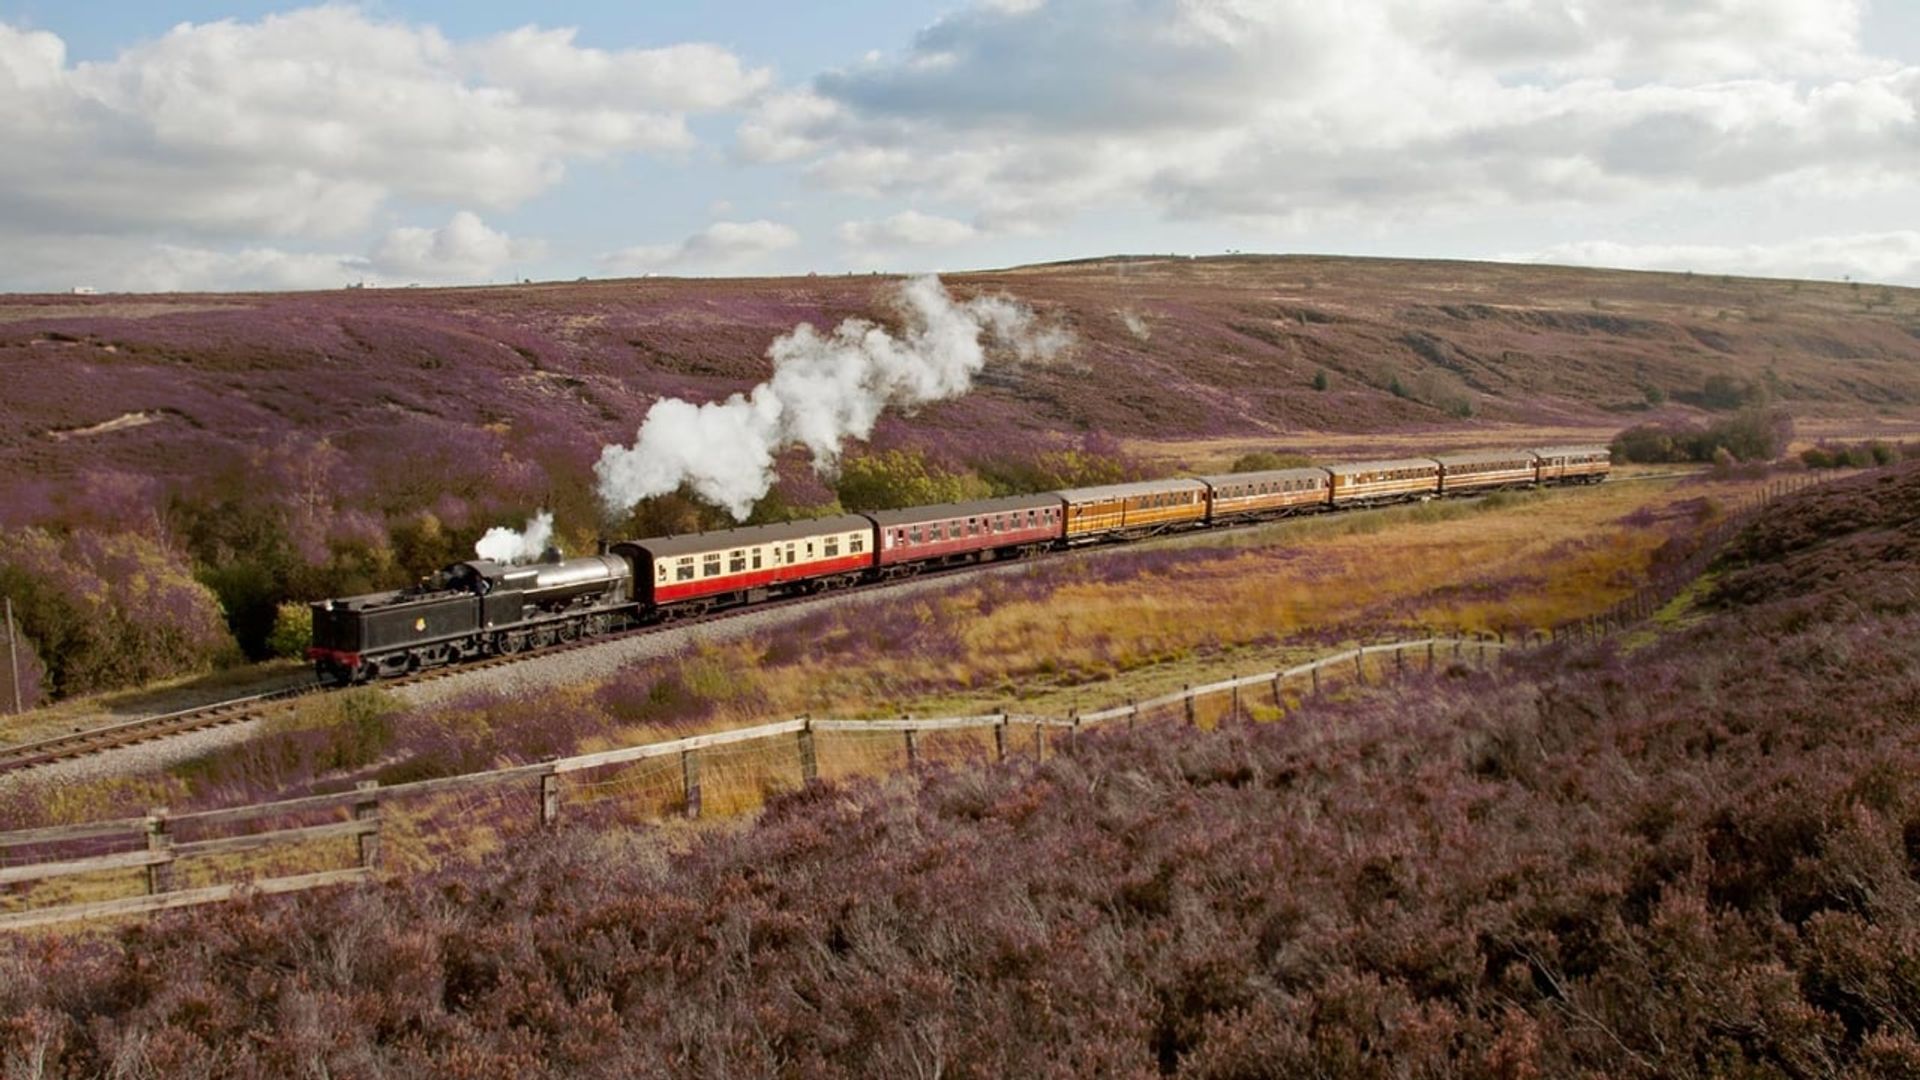 Great British Railway Journeys background